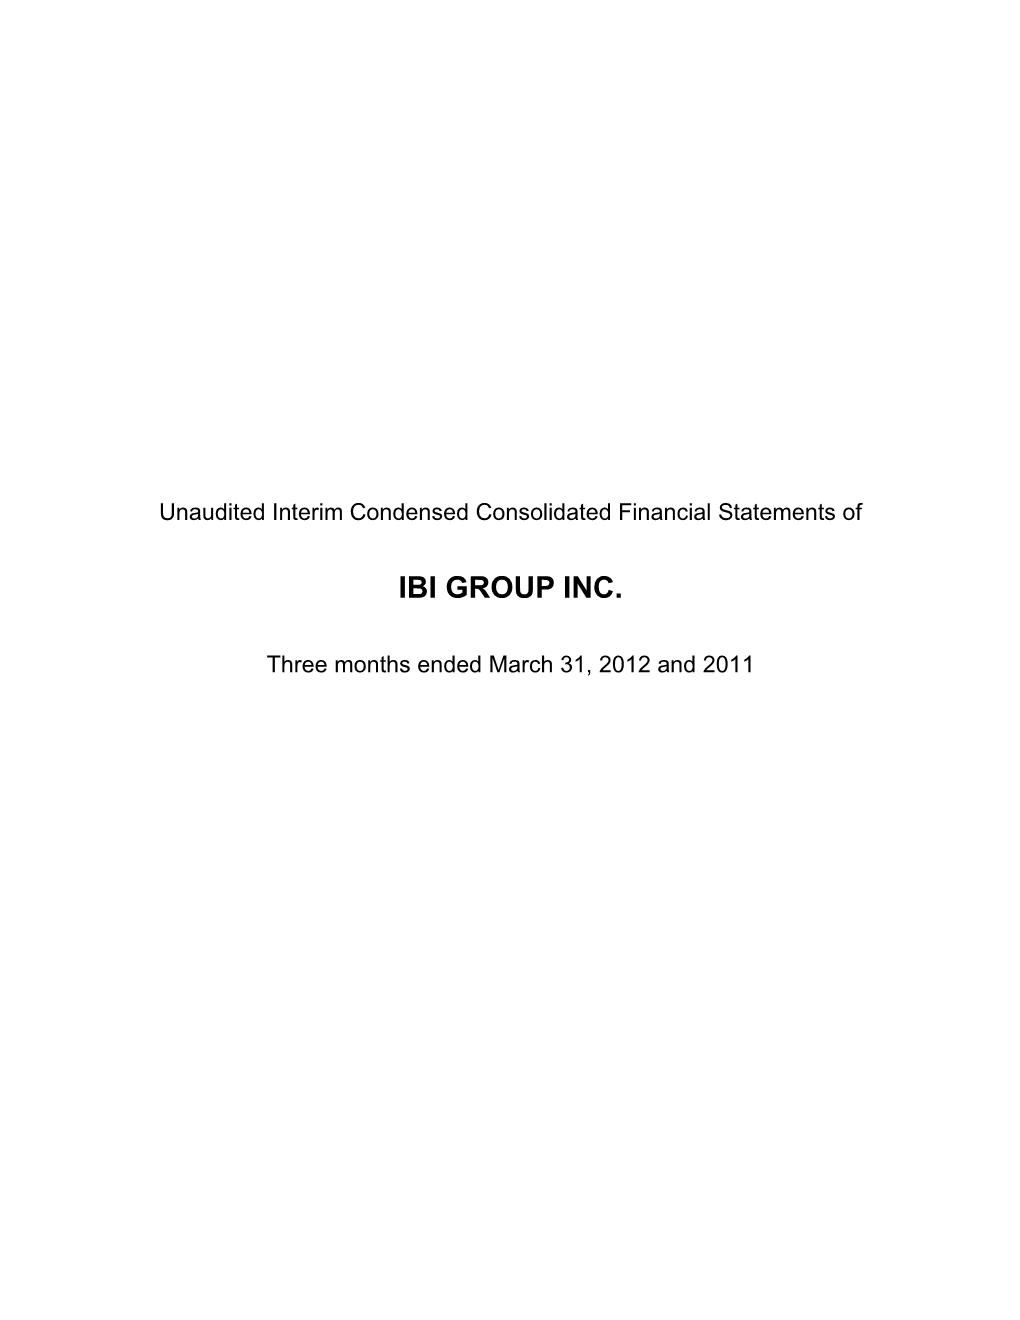 Pdf Financial Statements 2012 Q1 2019-02-22 22:08:54